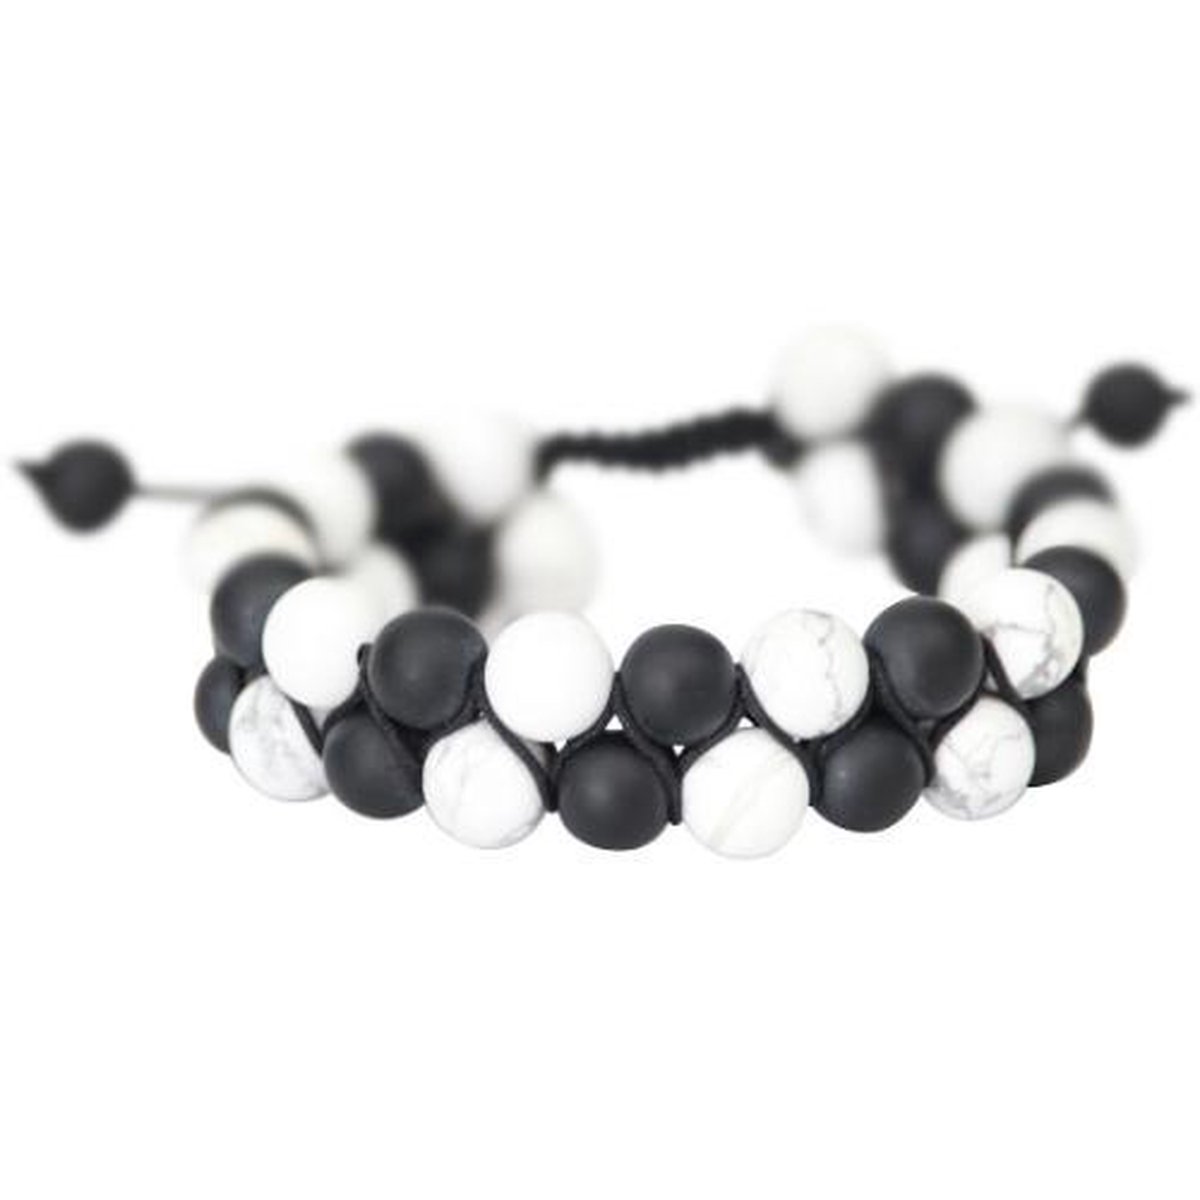 AWEMOZ Natuursteen Armbanden - Gevlochten Kralen Armbandjes - Zwart/Wit - Cadeau voor Mannen en Vrouwen